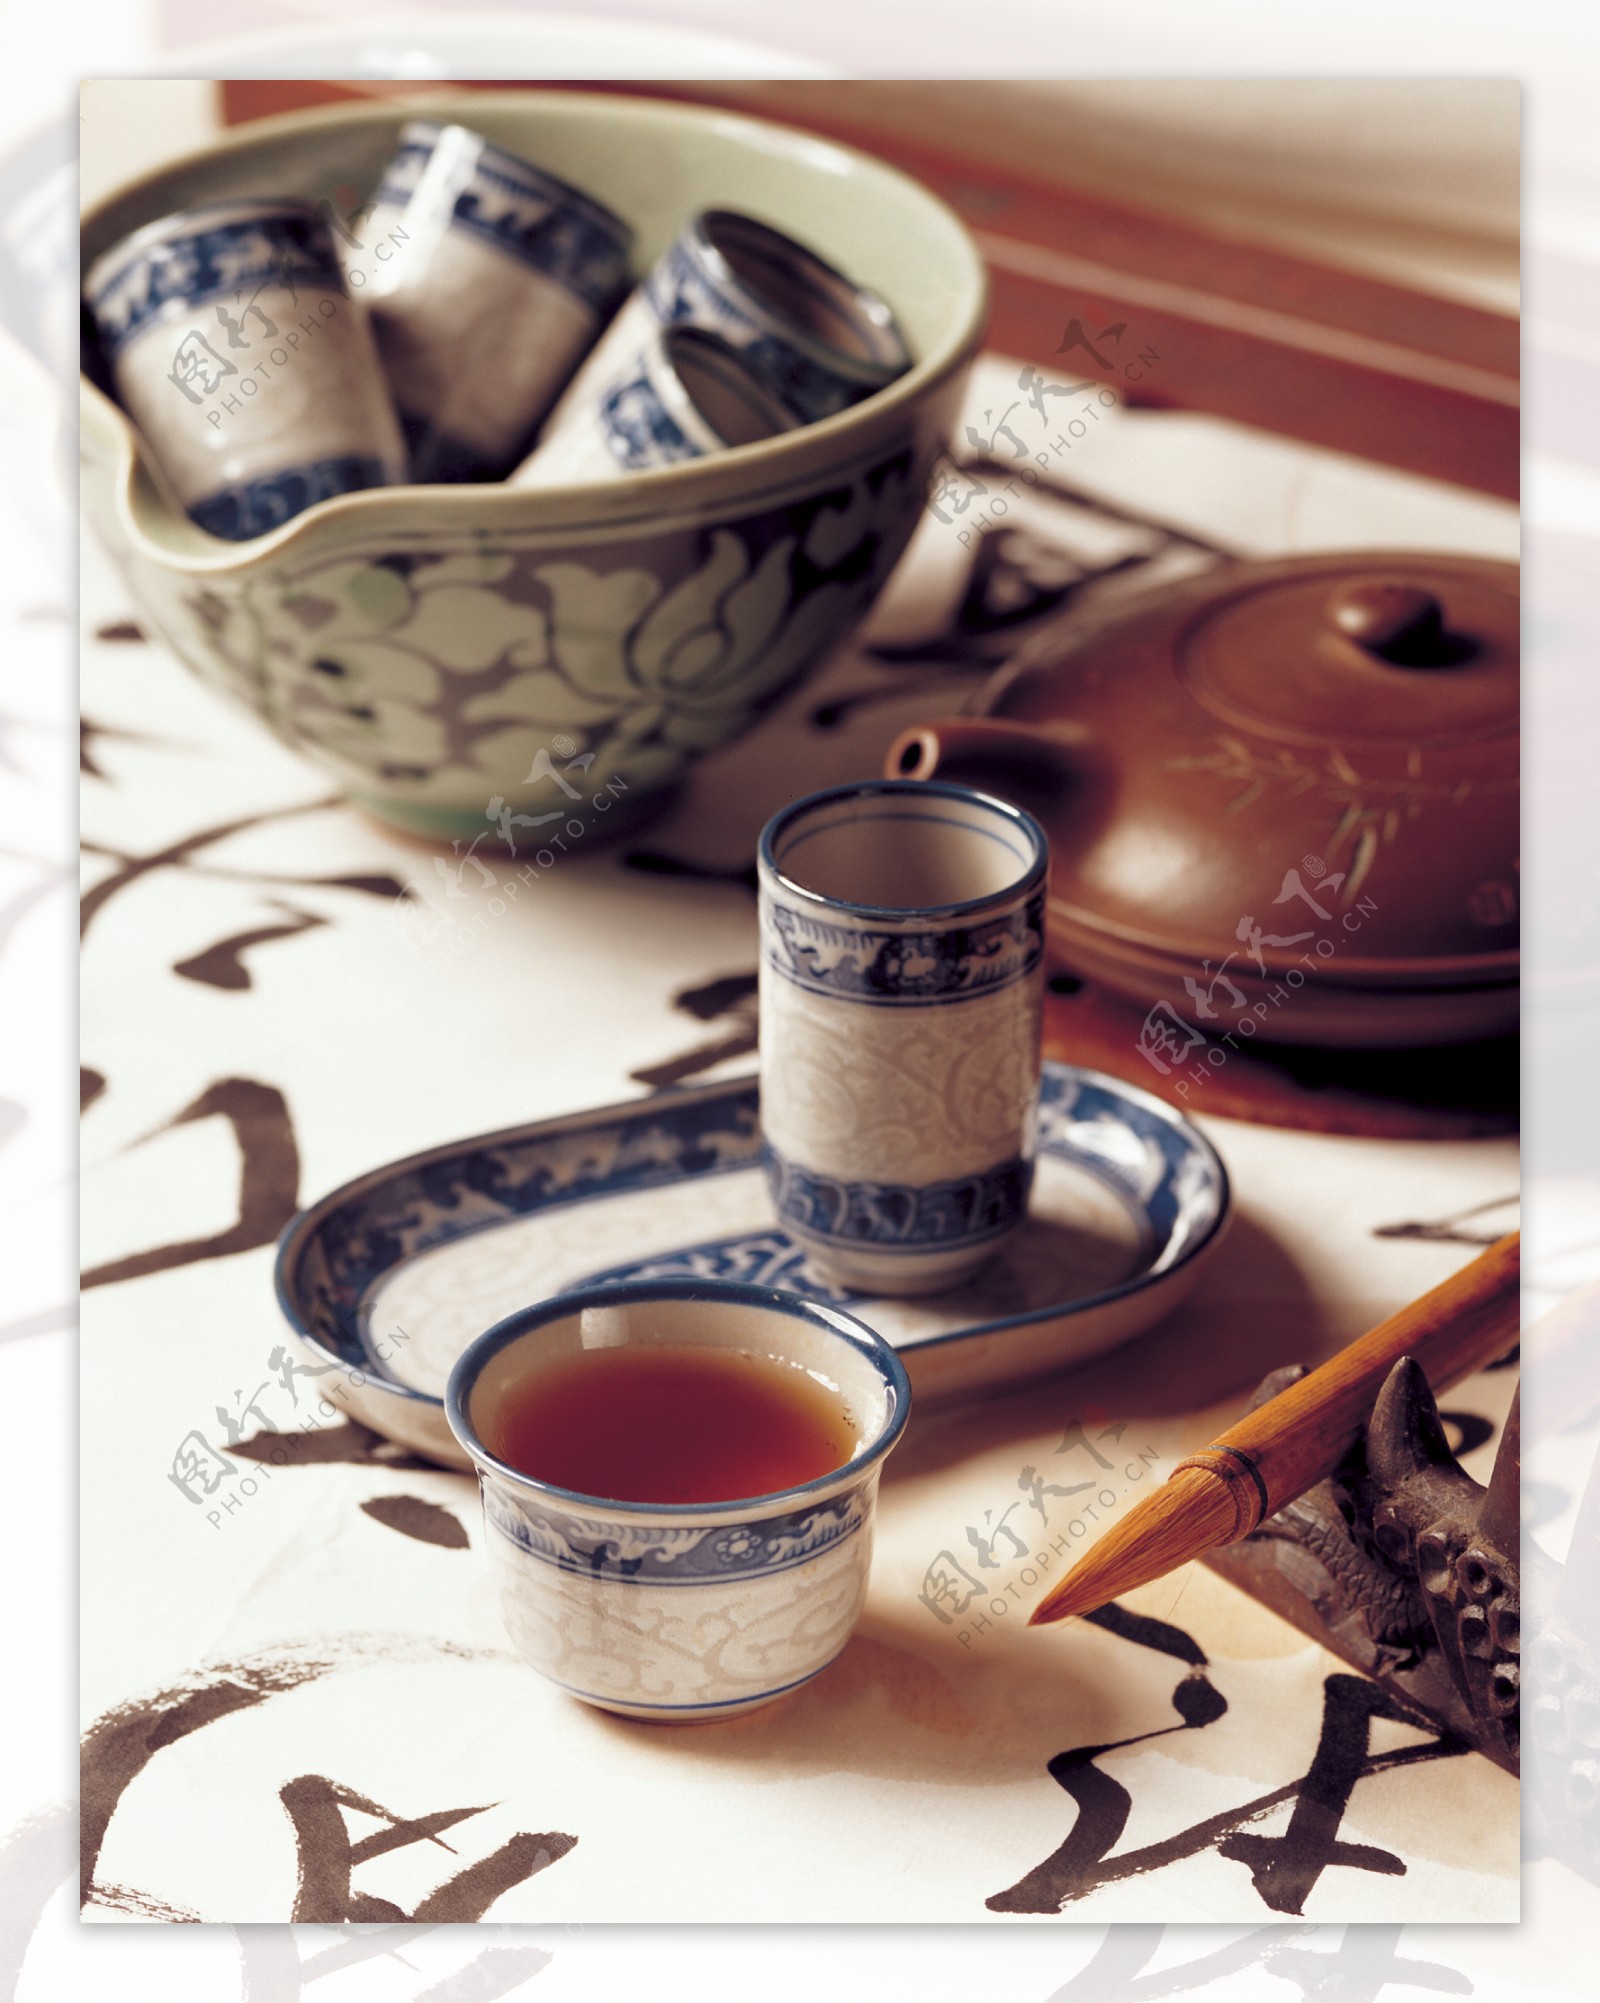 茶之文化茶具用品6